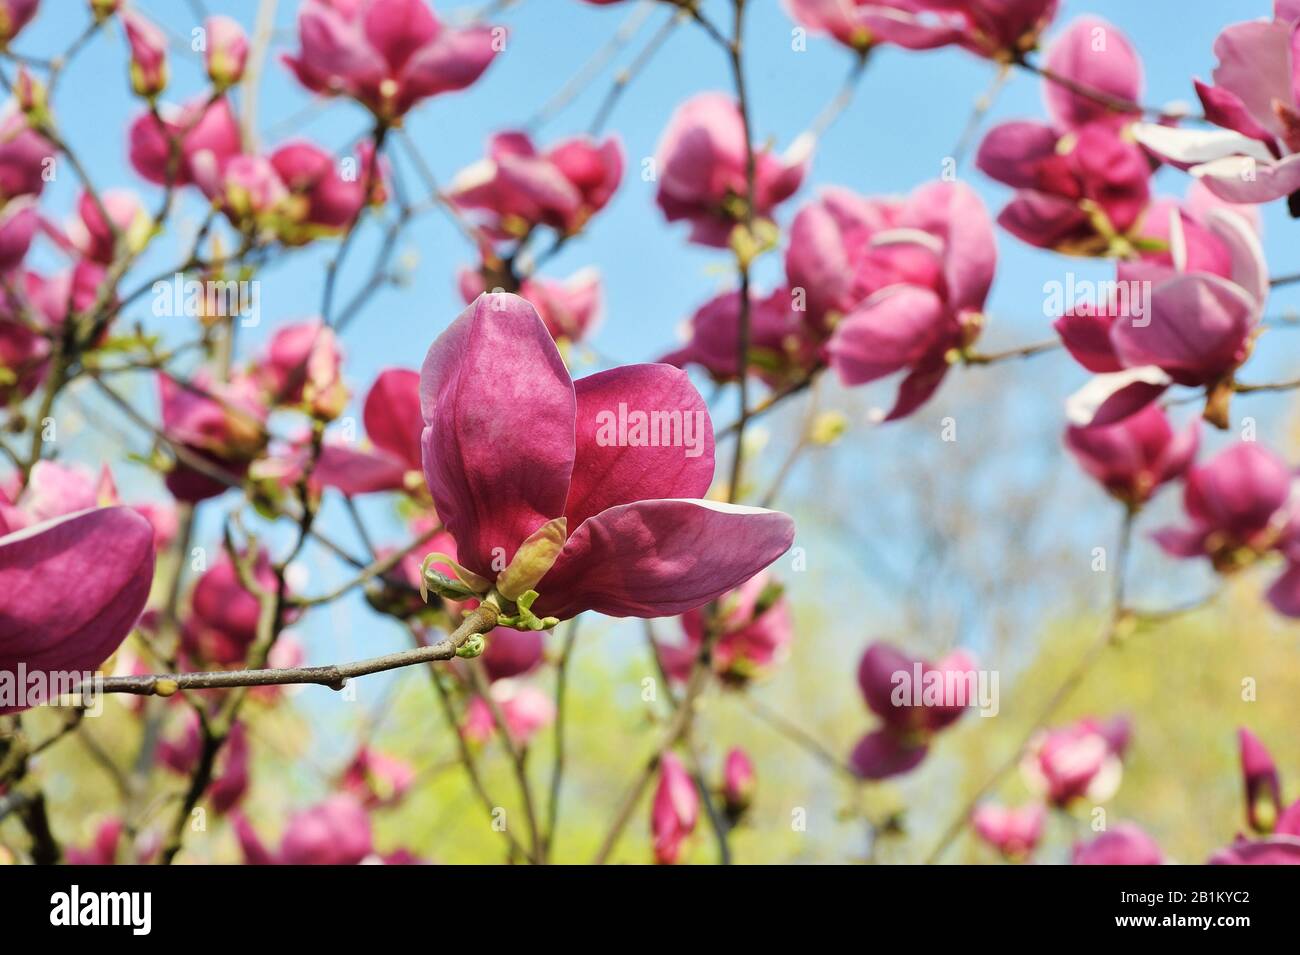 Hintergrund der farbenfrohen lila magnolie im Frühling, im Nahbereich. Fantastische Landschaft mit Blumen. Wunderschöne rosafarbene magnolienblätter gegen den blauen Himmel Stockfoto